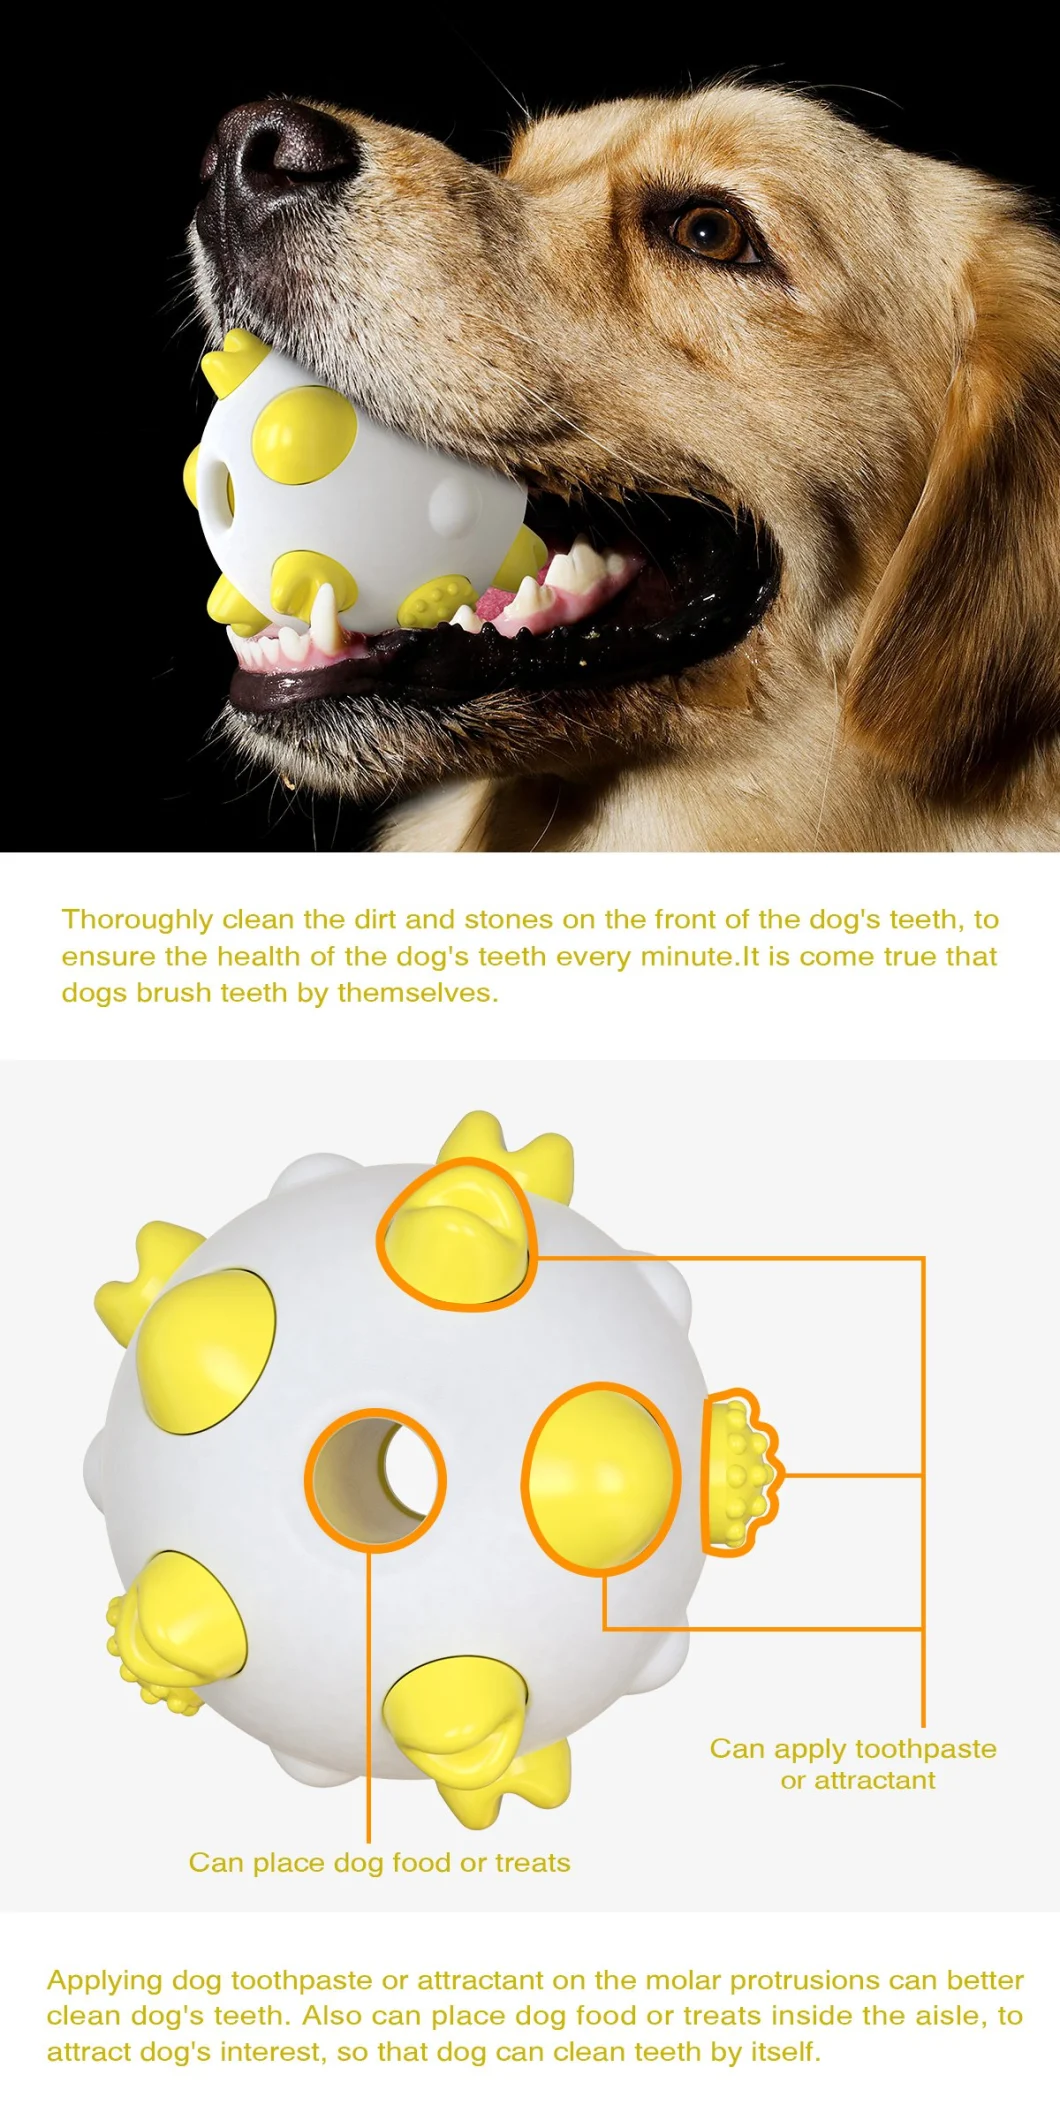 Hot Amazon Dog Toy Spherical Molar Dog Toy